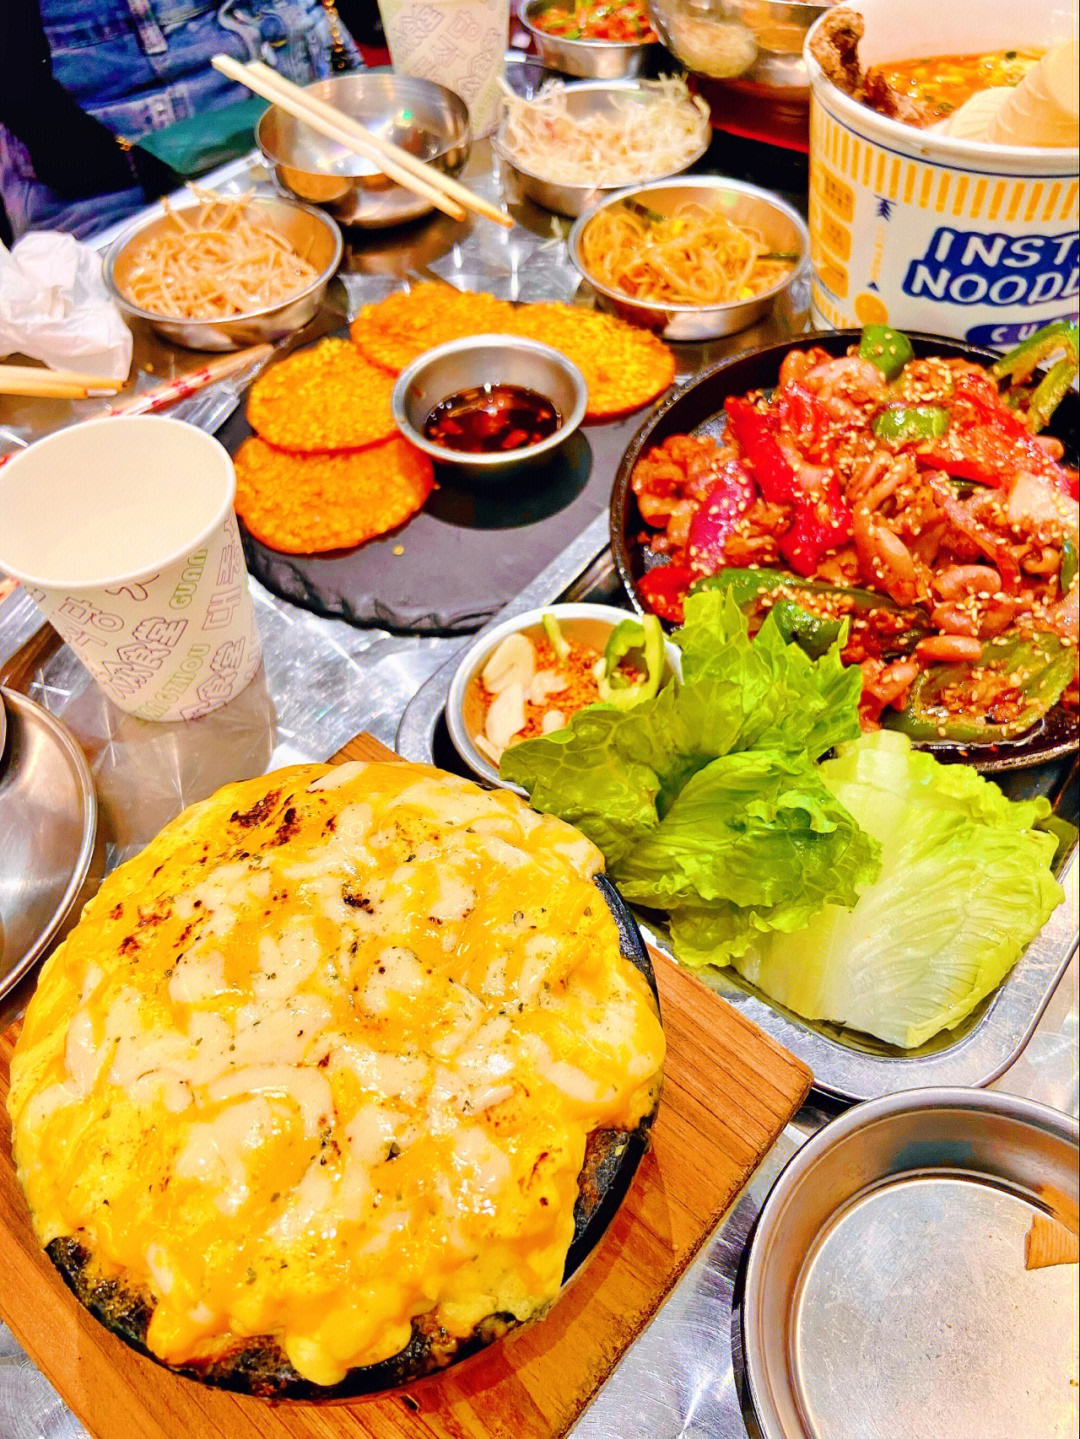 大众食堂韩国料理图片